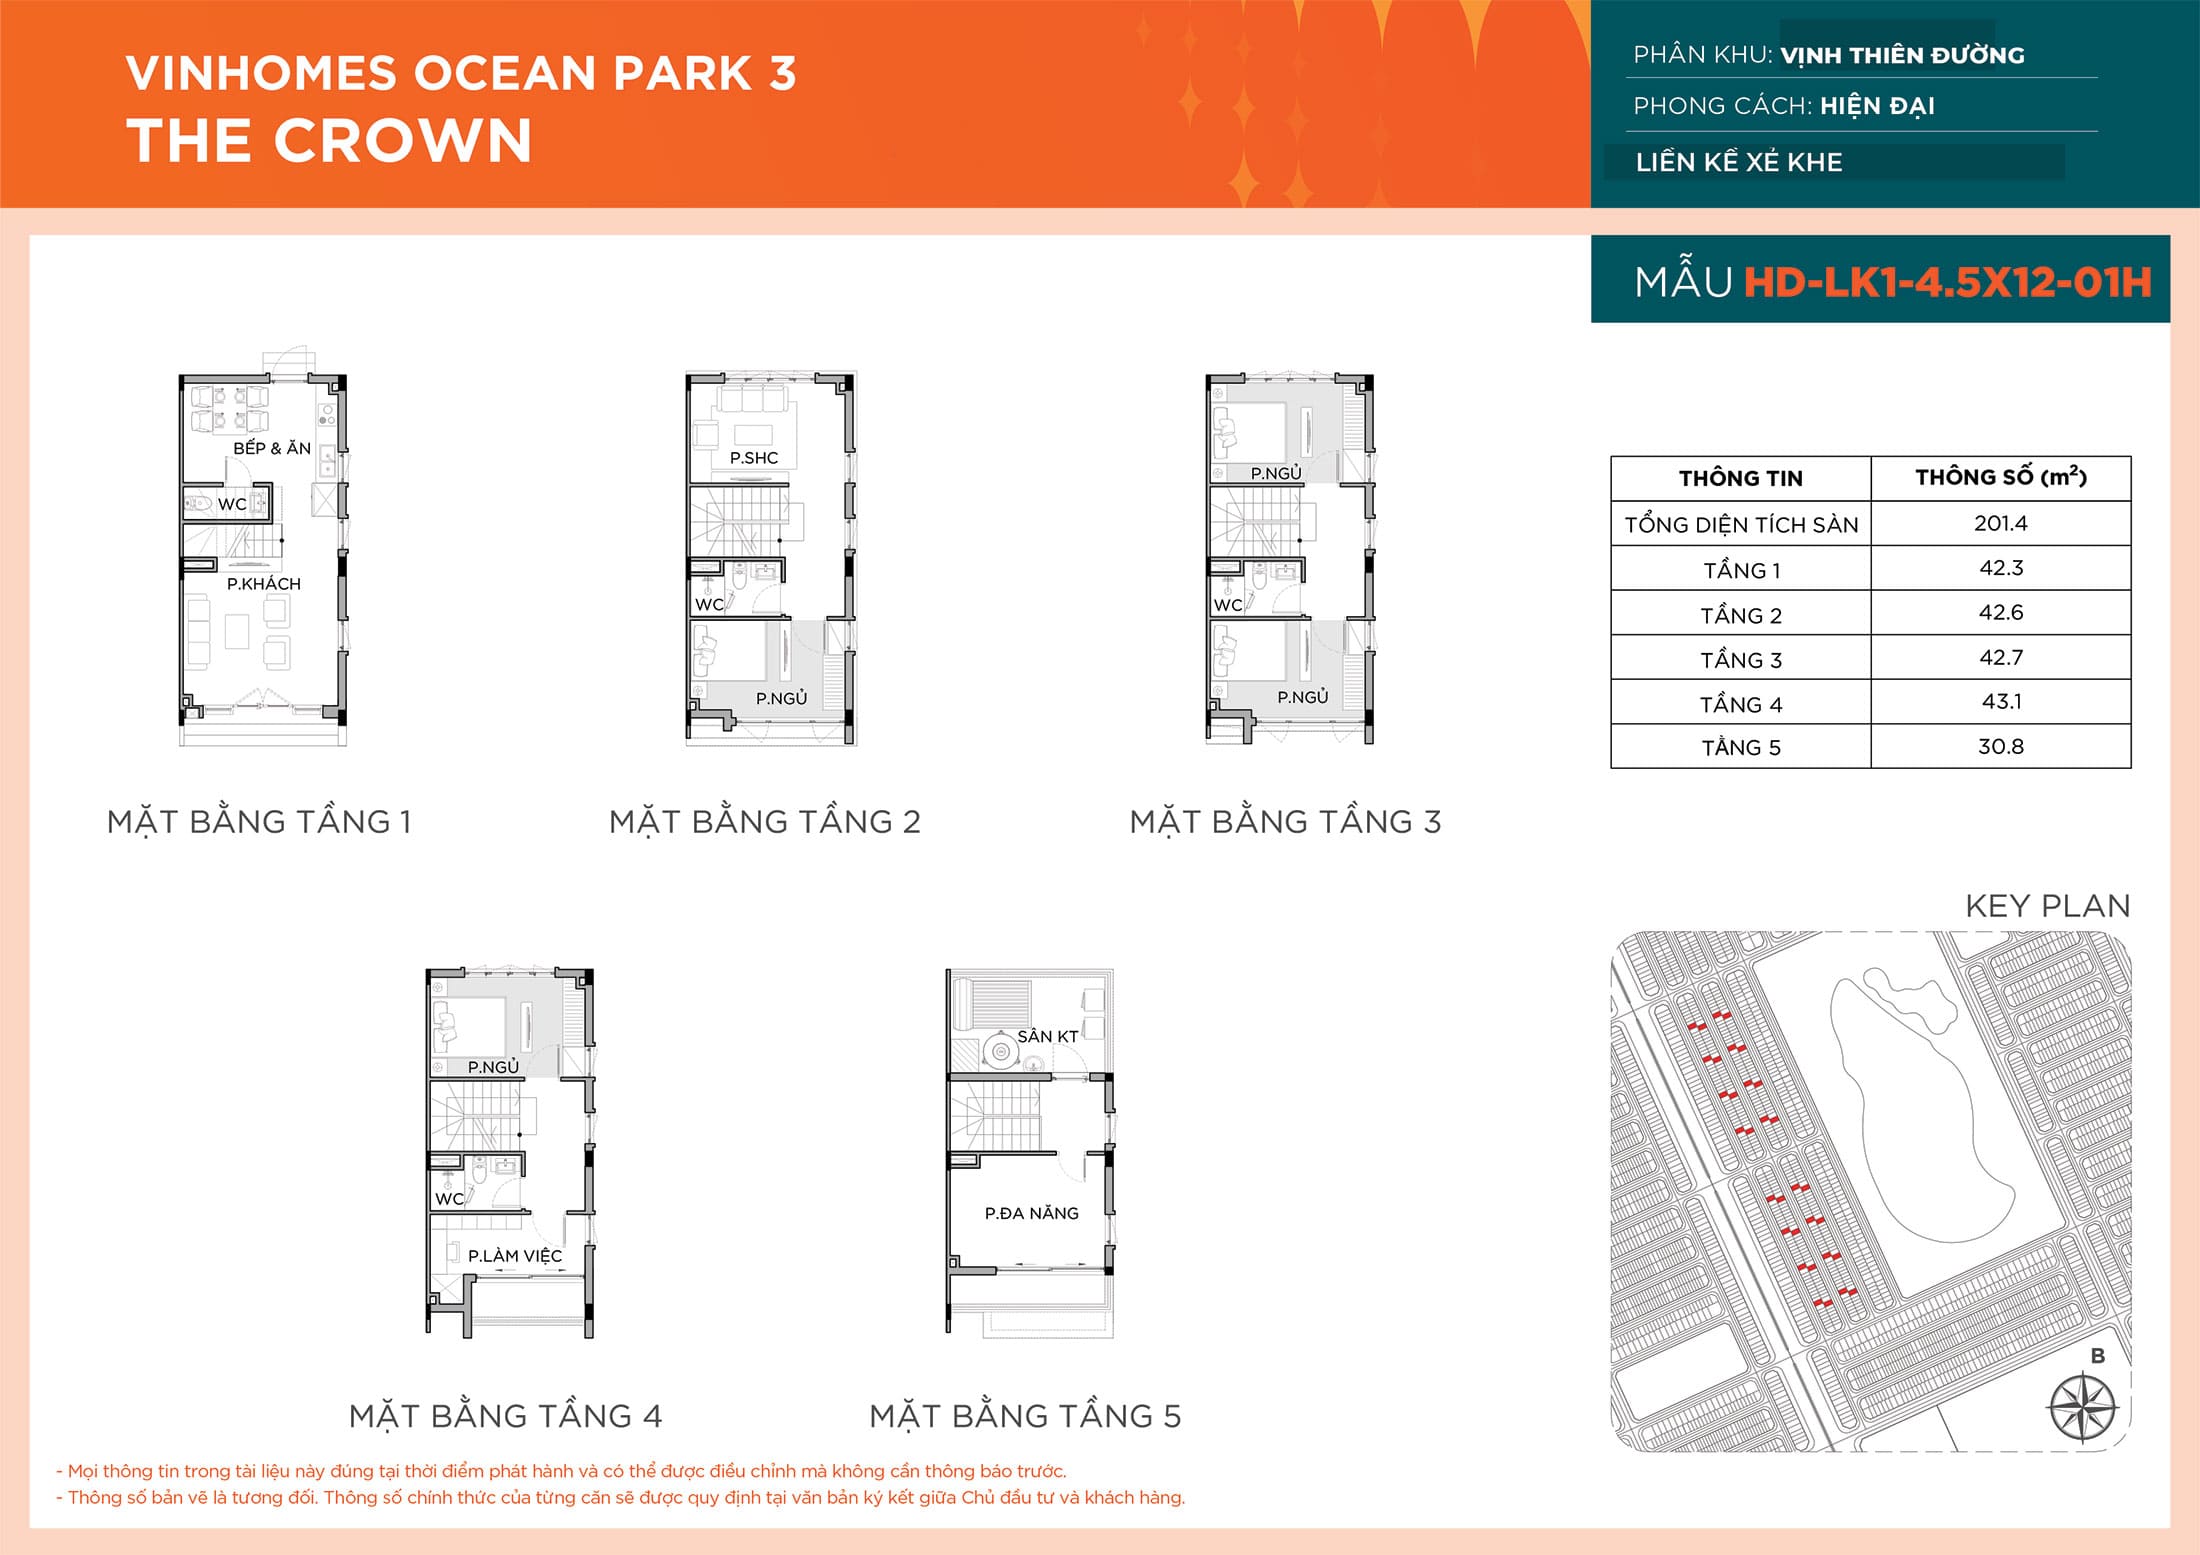 Layout thiết kế Liền Kề HD-LK1-4.5X12-01H phân khu Vịnh Thiên Đường dự án Vinhomes Ocean Park 3 - The Crown.